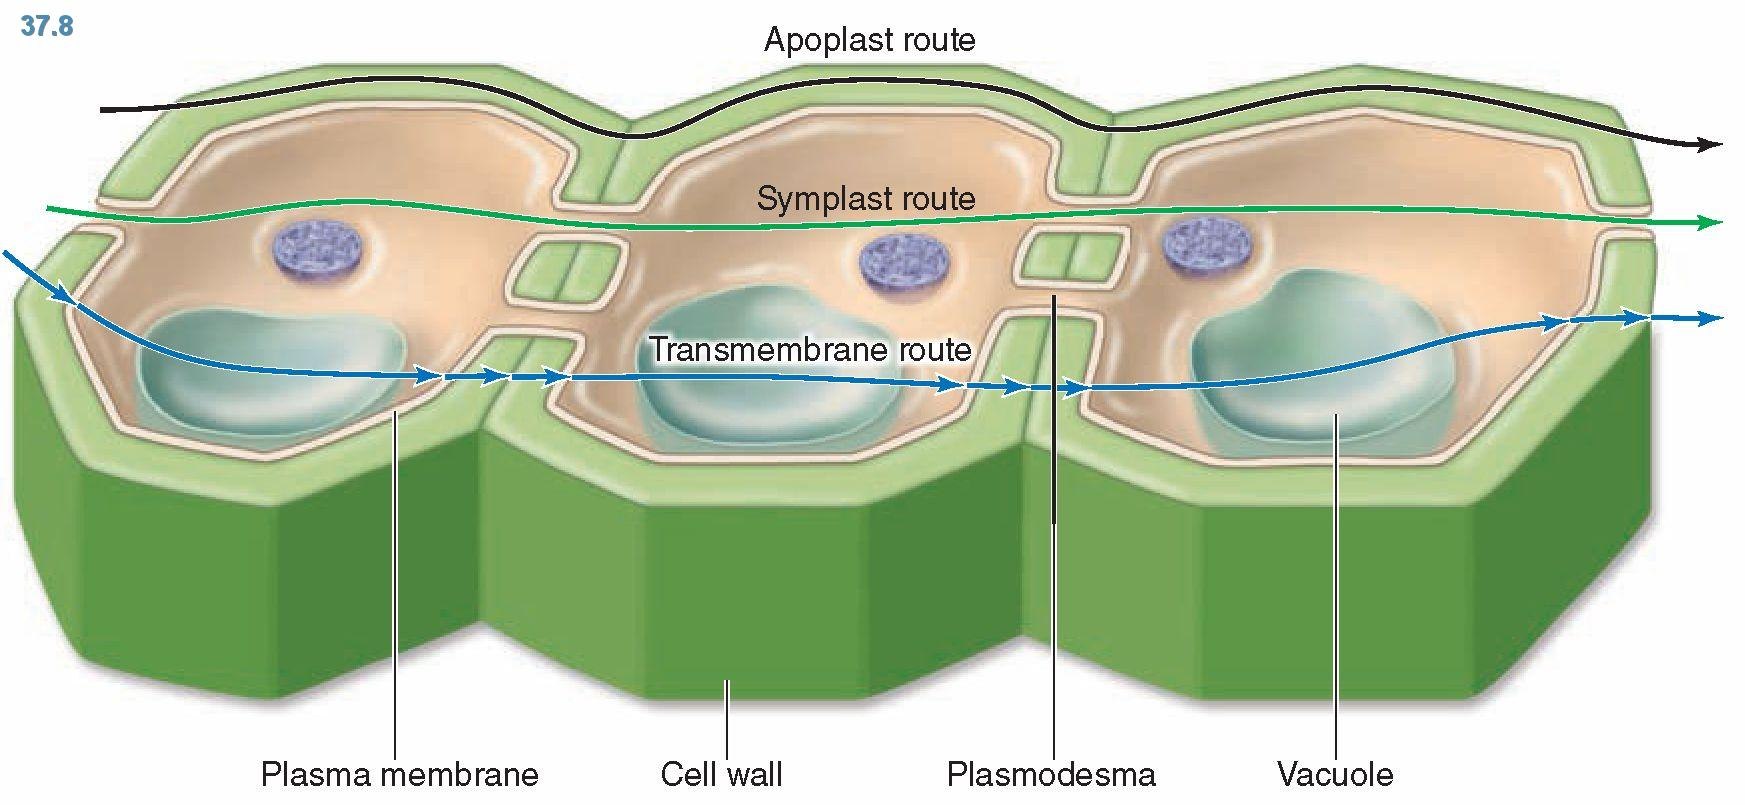 Какая клетка содержит плазмодесмы